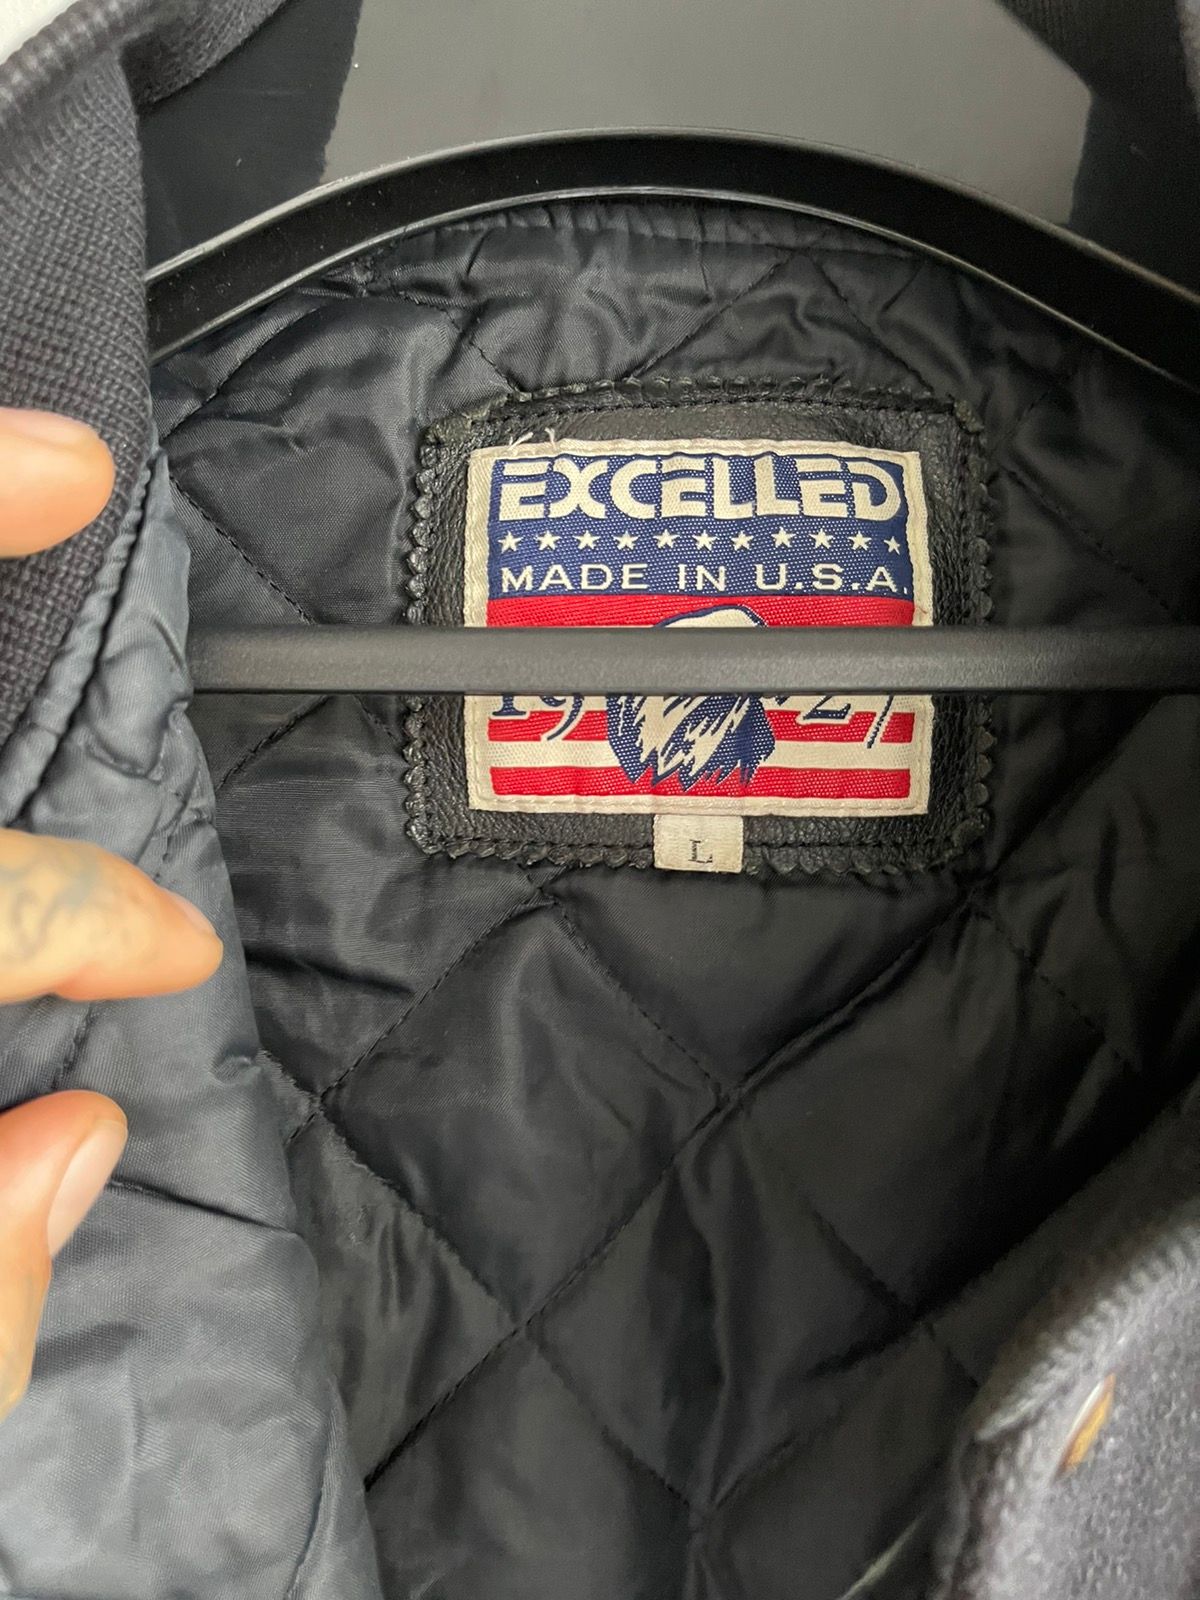 Vintage 90s Thrashed YING YANG Leather Varsity Bomber Jacket